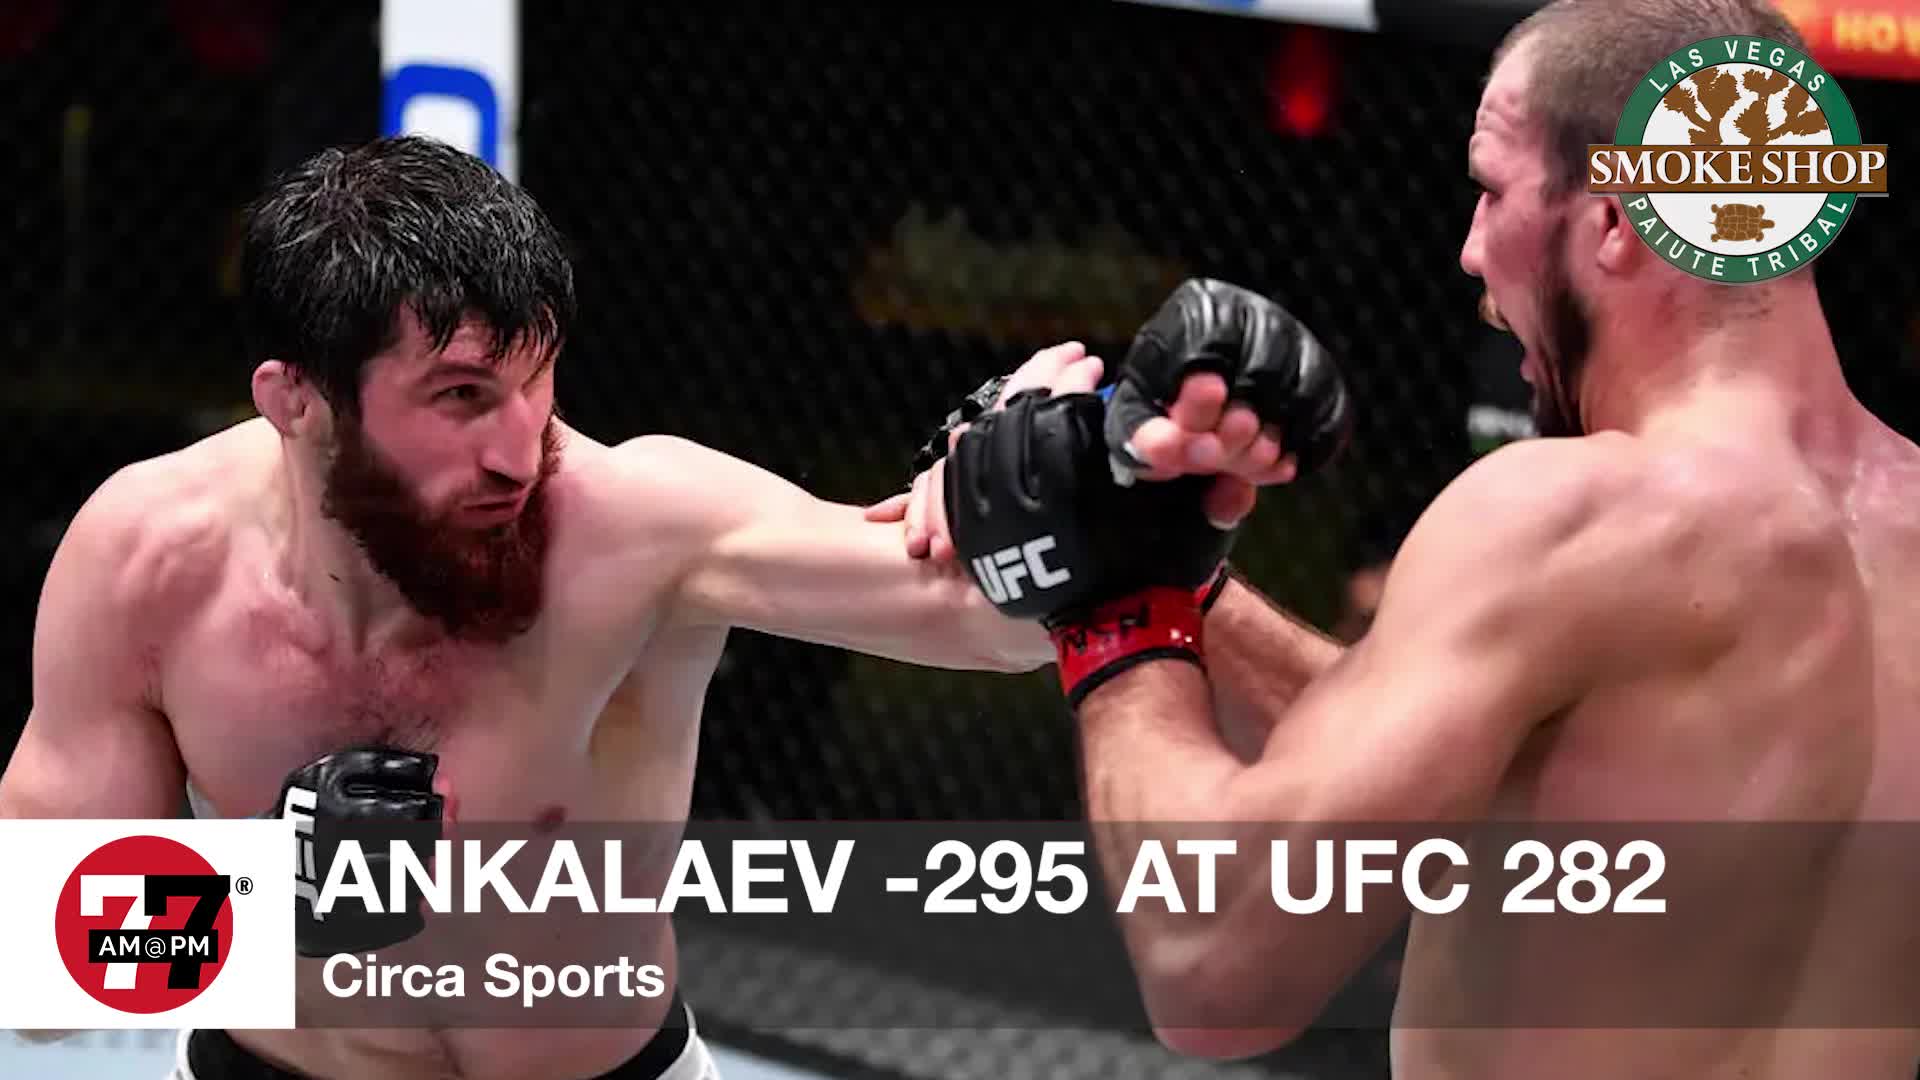 Ankalaev -295 at UFC 282